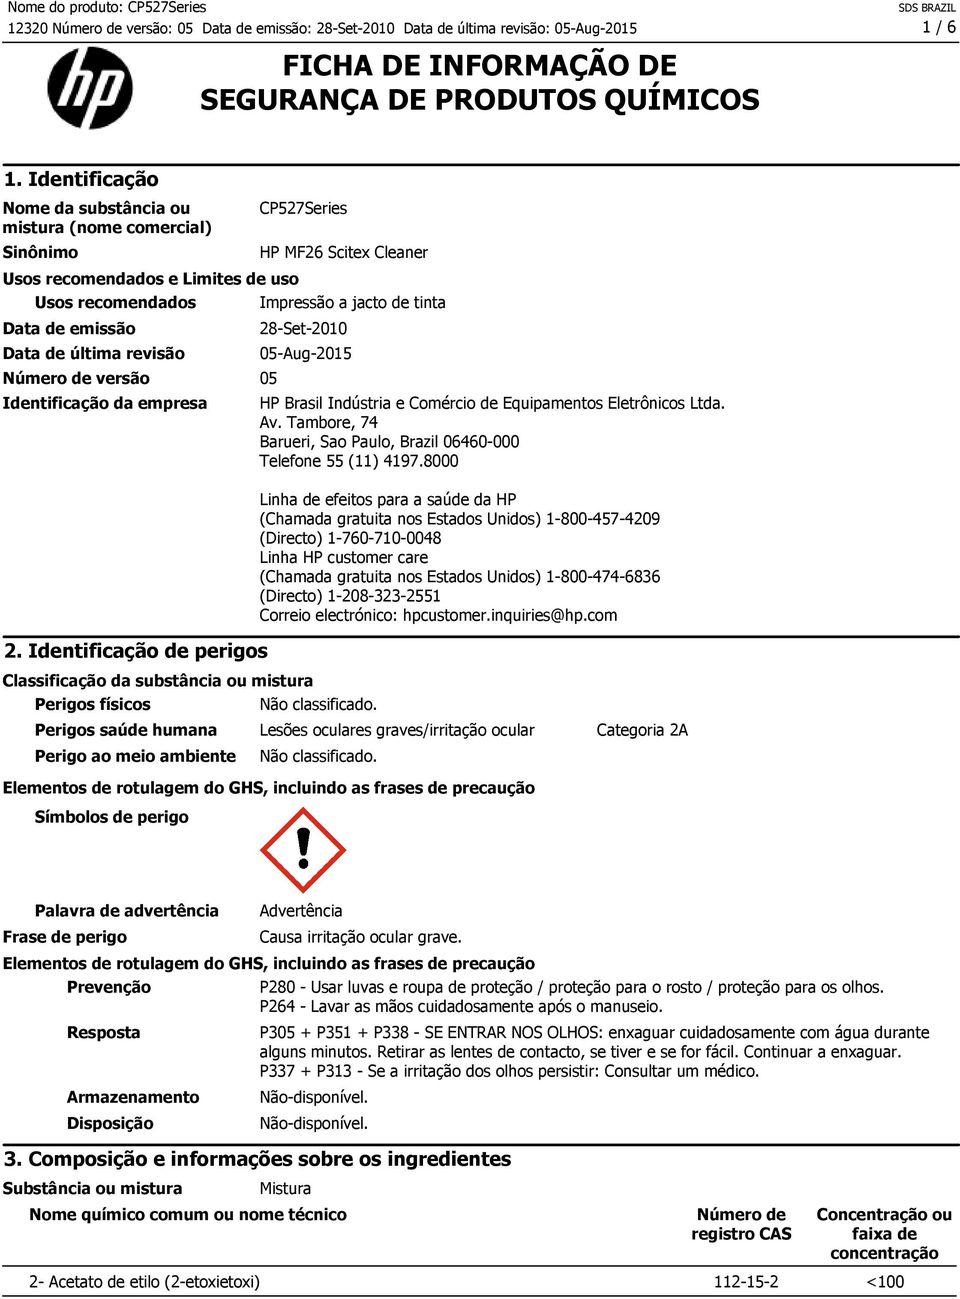 empresa 2. Identificação de perigos CP527Series HP MF26 Scitex Cleaner Impressão a jacto de tinta 28-Set-2010 05-Aug-2015 HP Brasil Indústria e Comércio de Equipamentos Eletrônicos Ltda. Av.